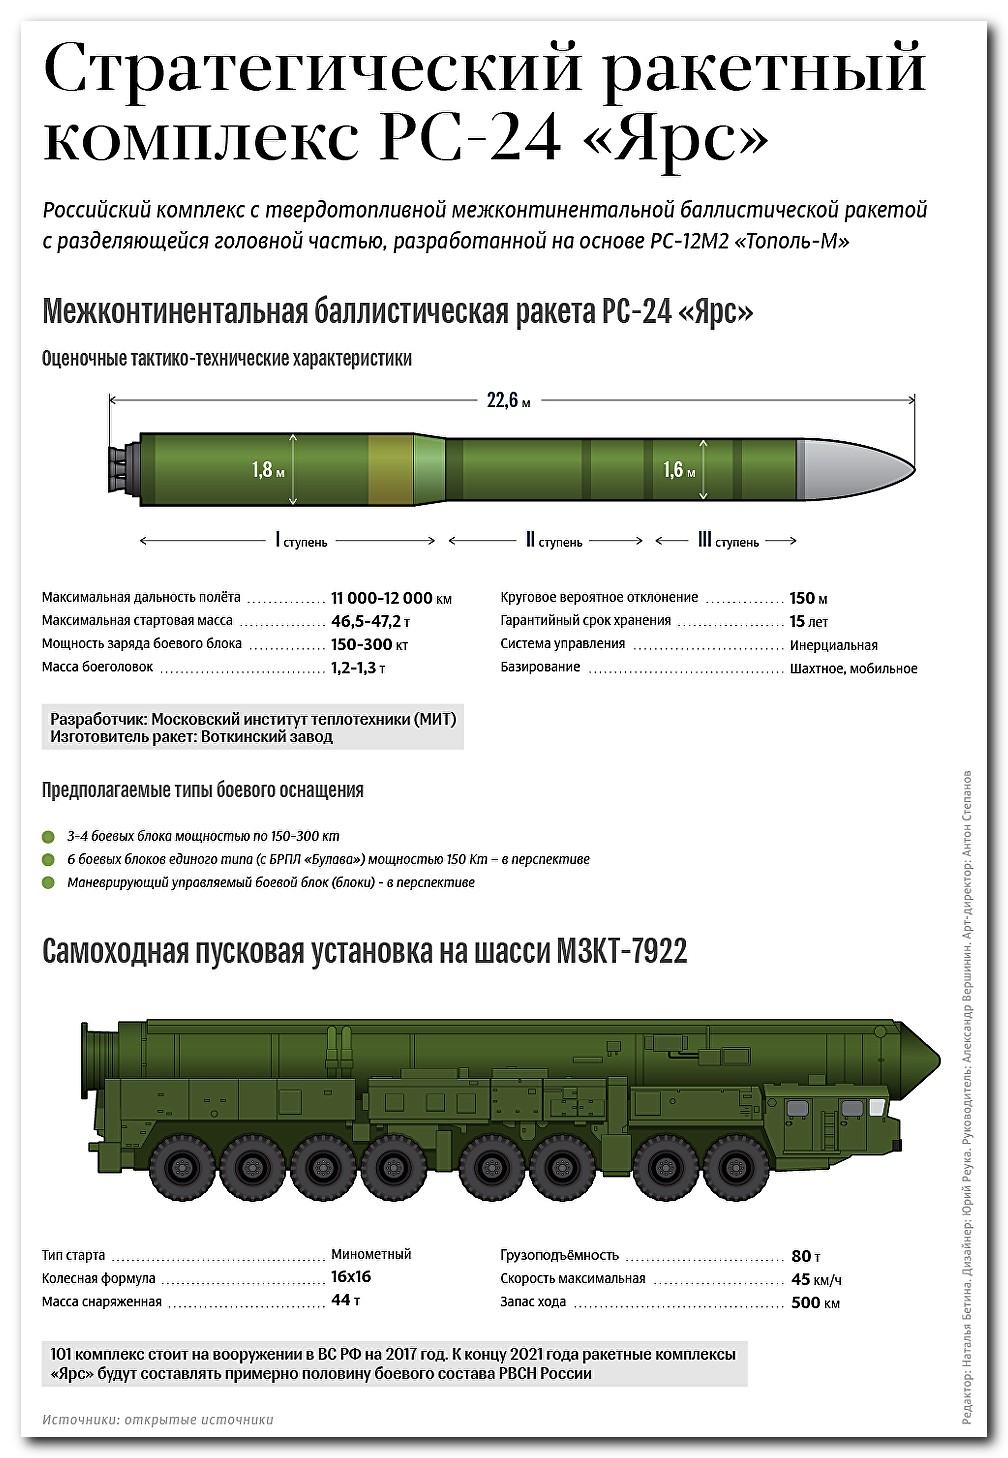 Сколько тополь м. Ракетные комплексы РС-24 "Ярс".. Ярс баллистическая ракета радиус поражения. Ракета РС 24 Ярс характеристики. Ядерная ракета РС-24 «Ярс».